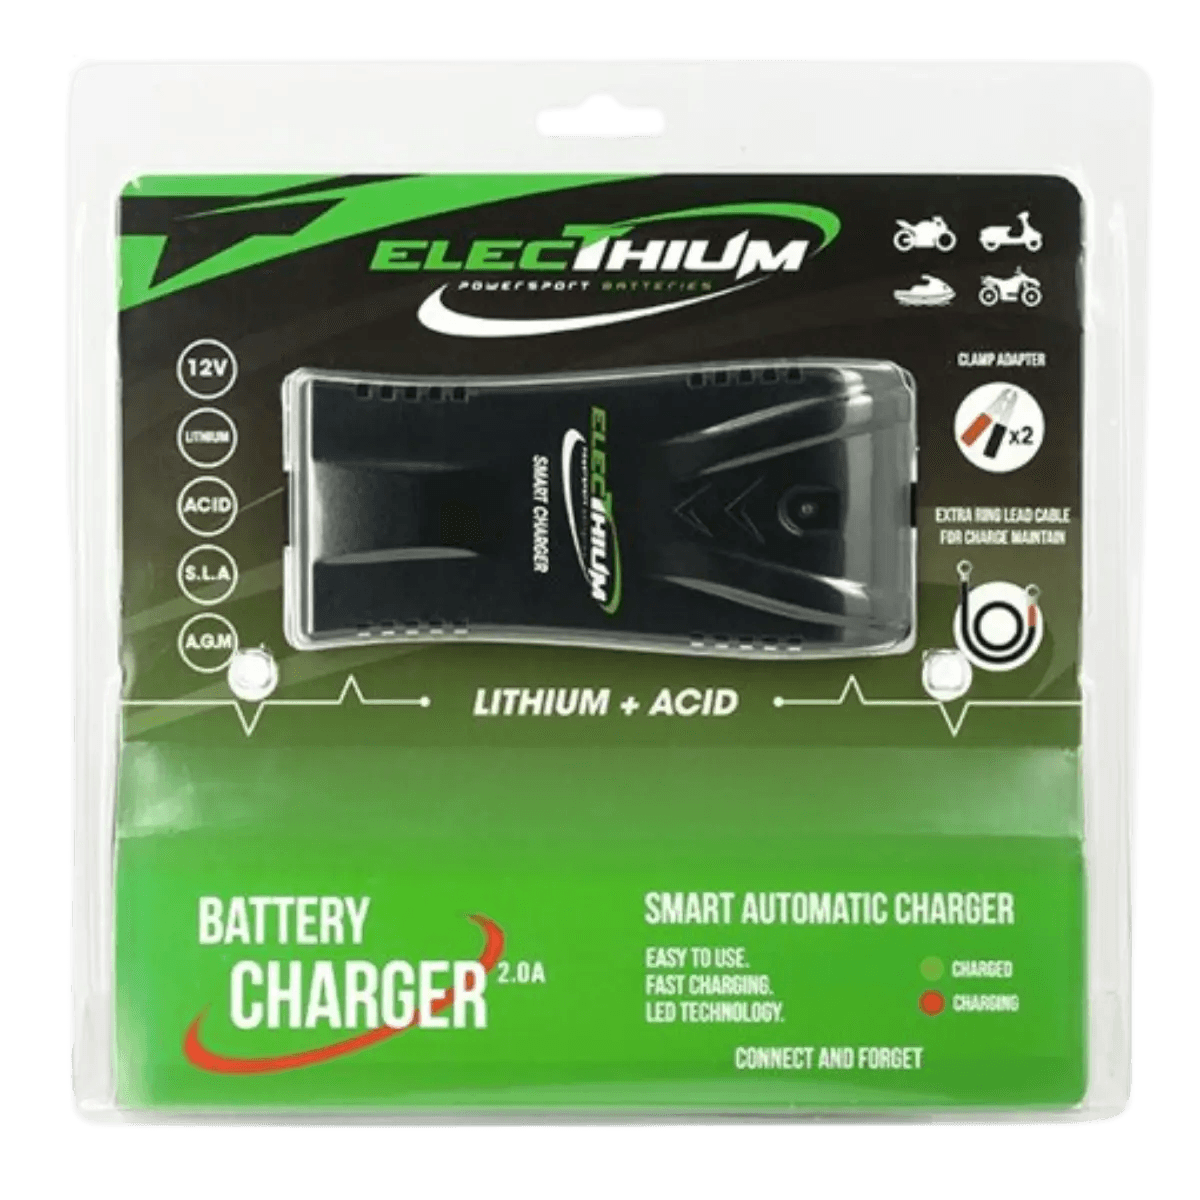 Electhium - Chargeur Batterie Moto et Scooter - Pour batterie Lithium-ion & Acide